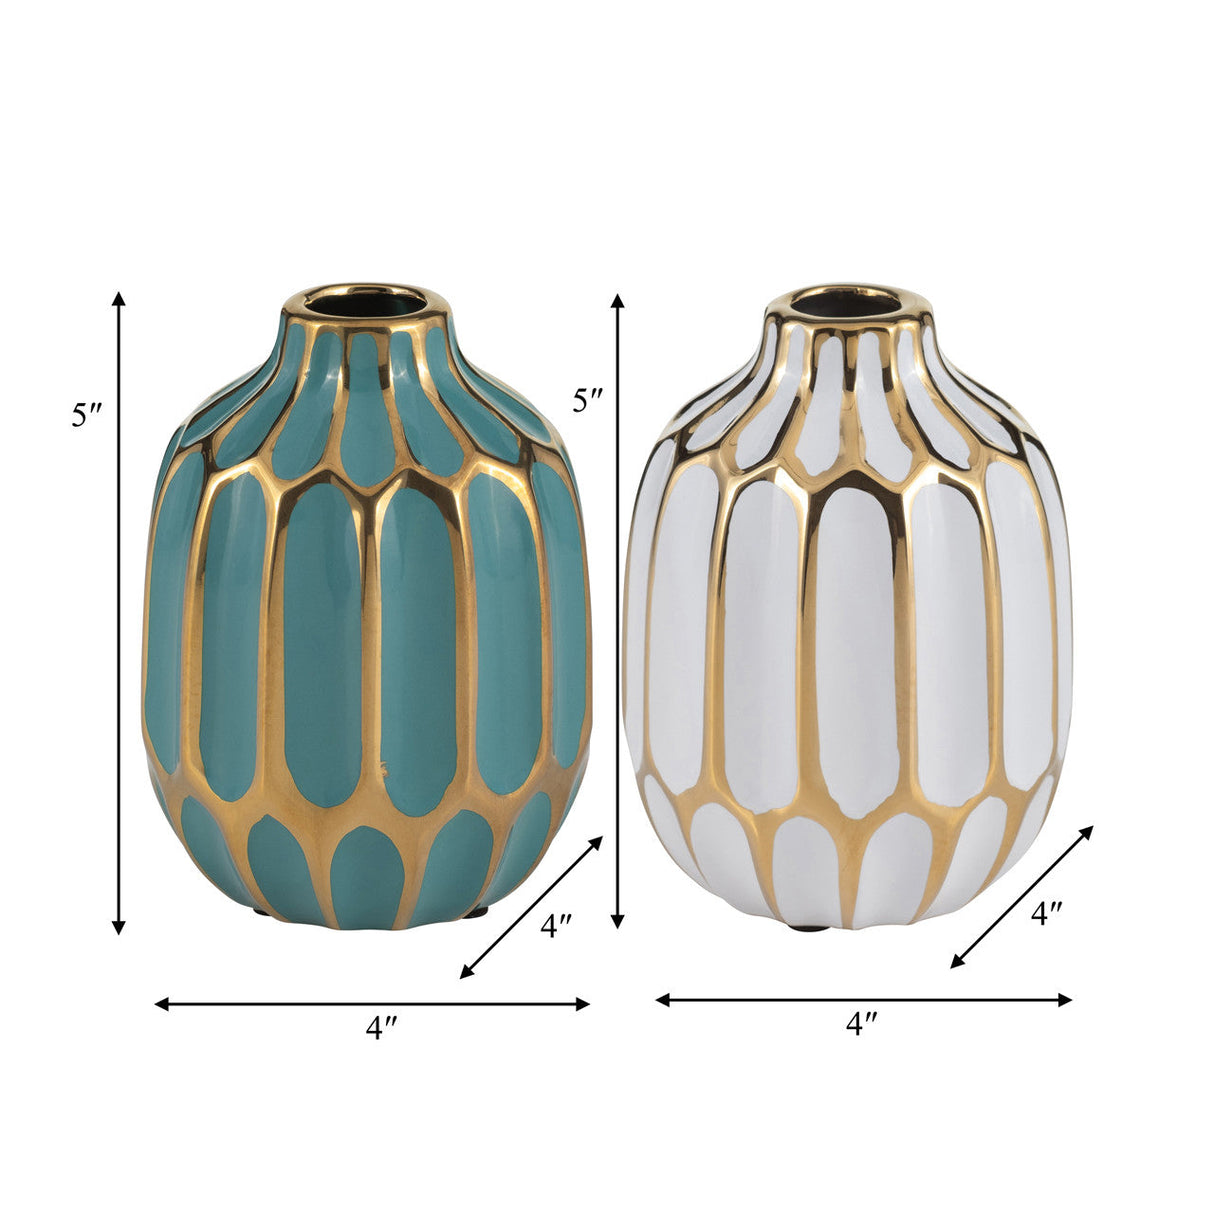 Ceramic Vase, 5"h, S/2, Turquoise/white